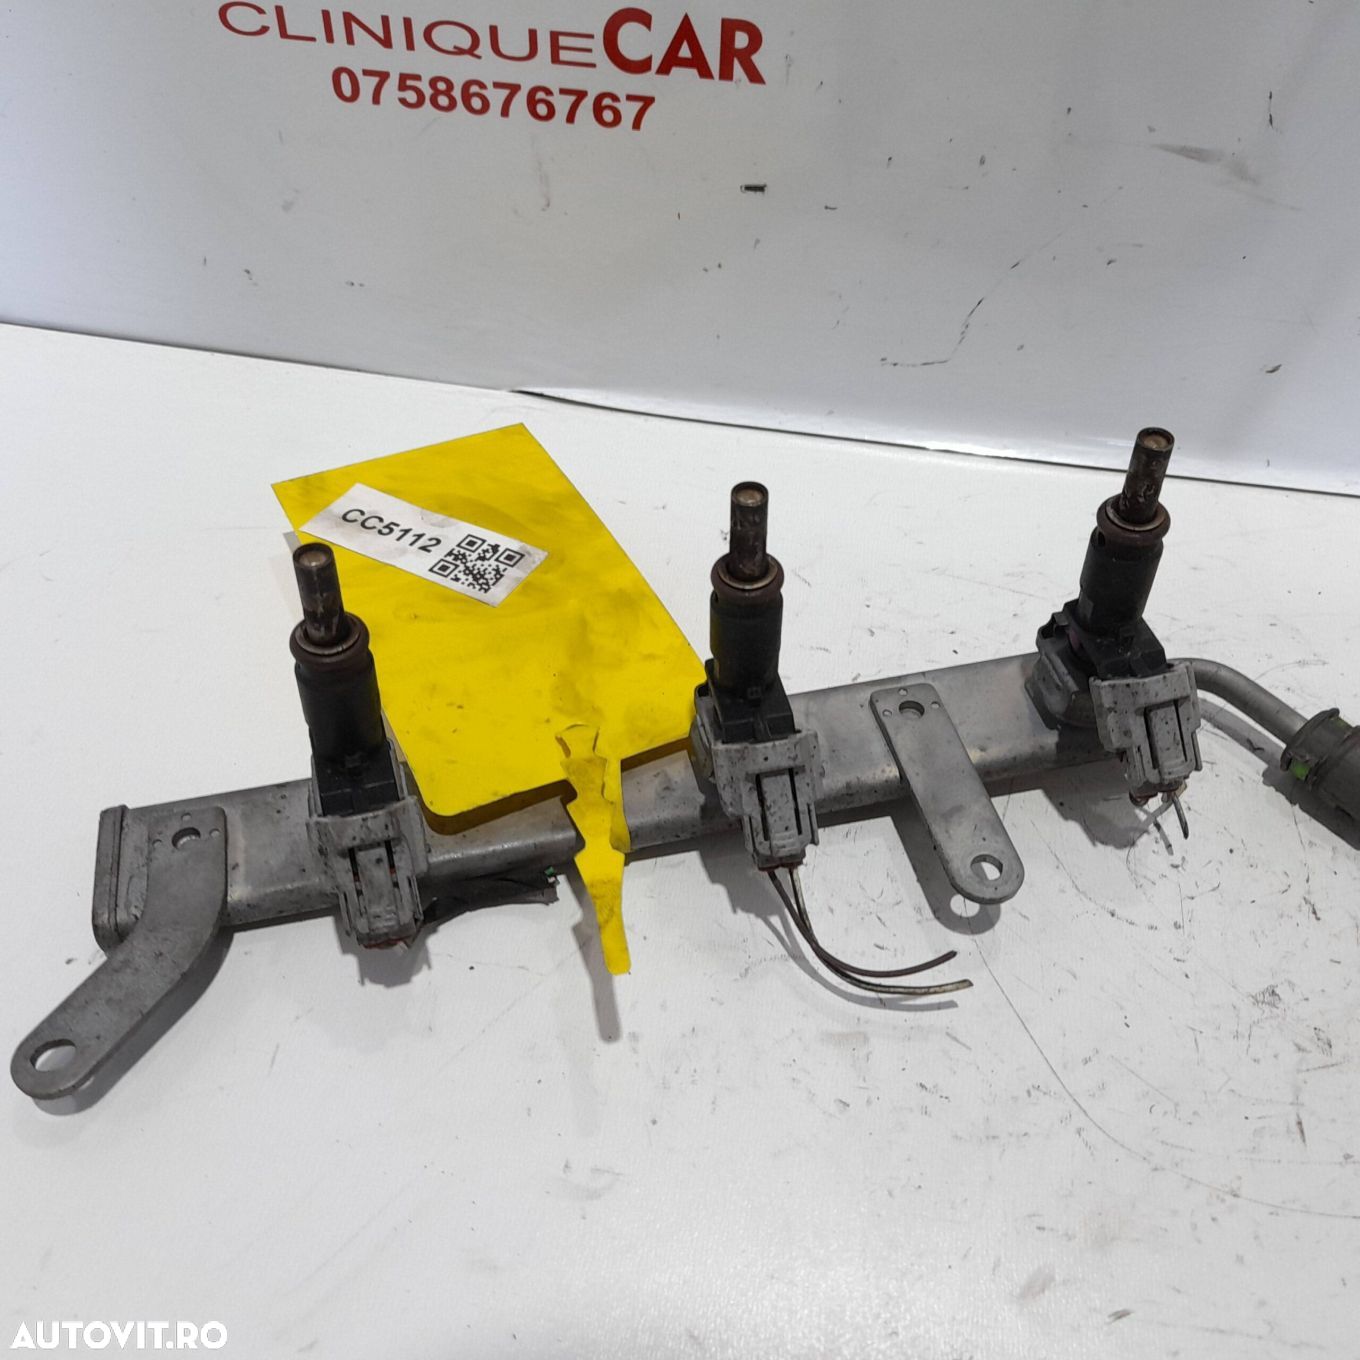 Releu injecție Renault Twingo 1.0 B 2018| 175202322R | J6140815AR3 - 1